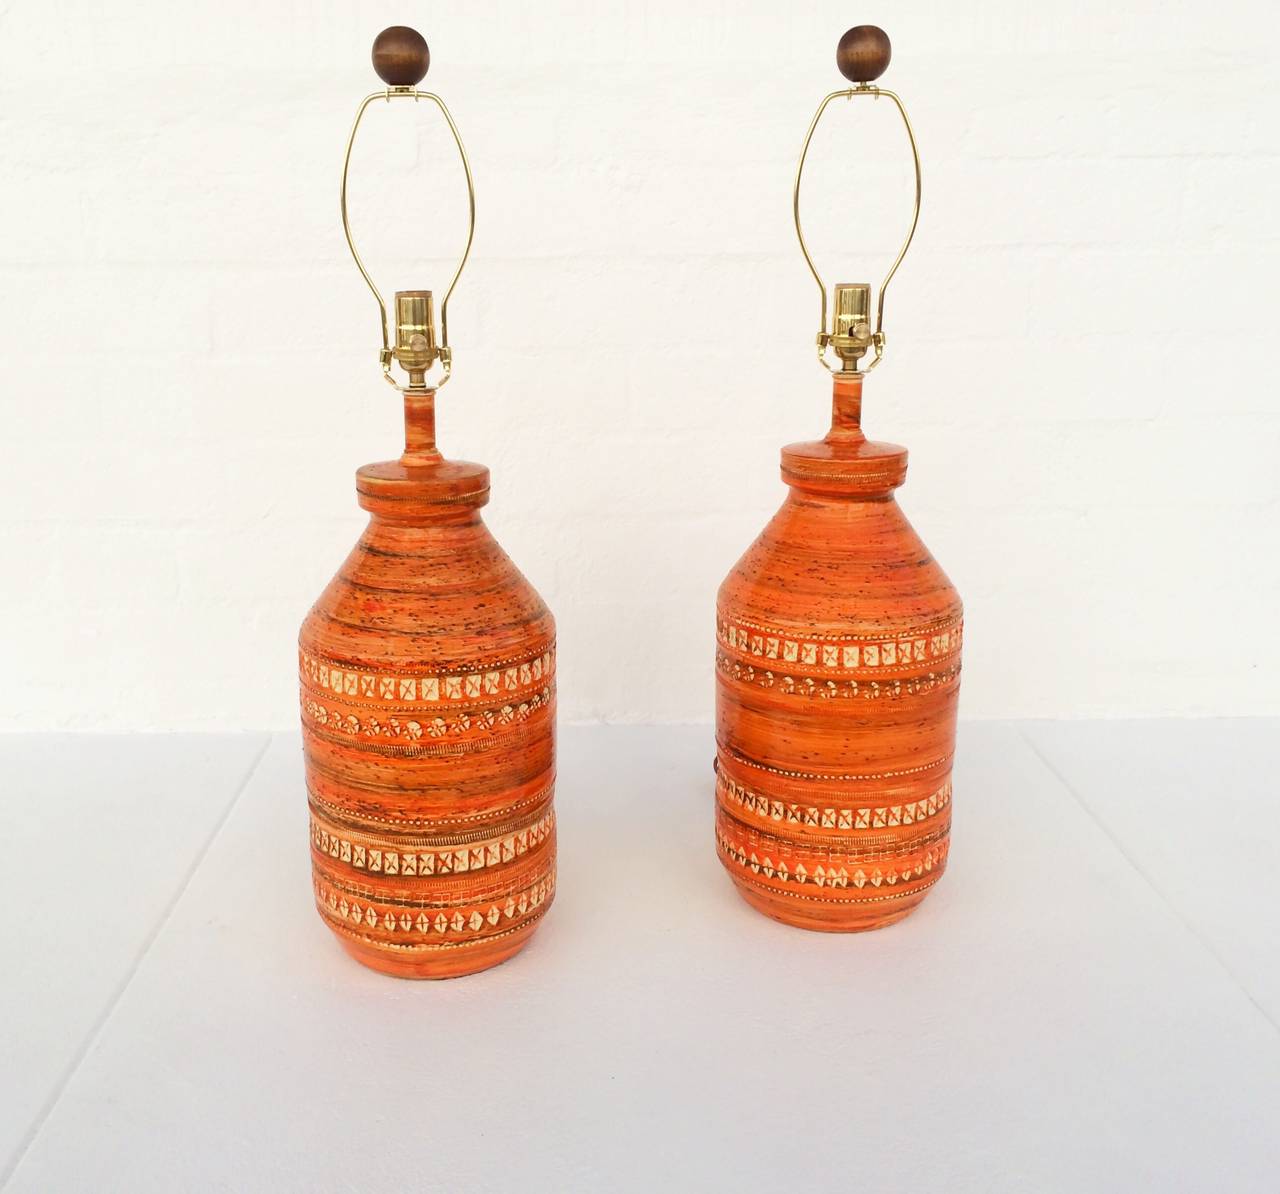 Amazing Pair of Italian Ceramic Lamps by Bitossi 1